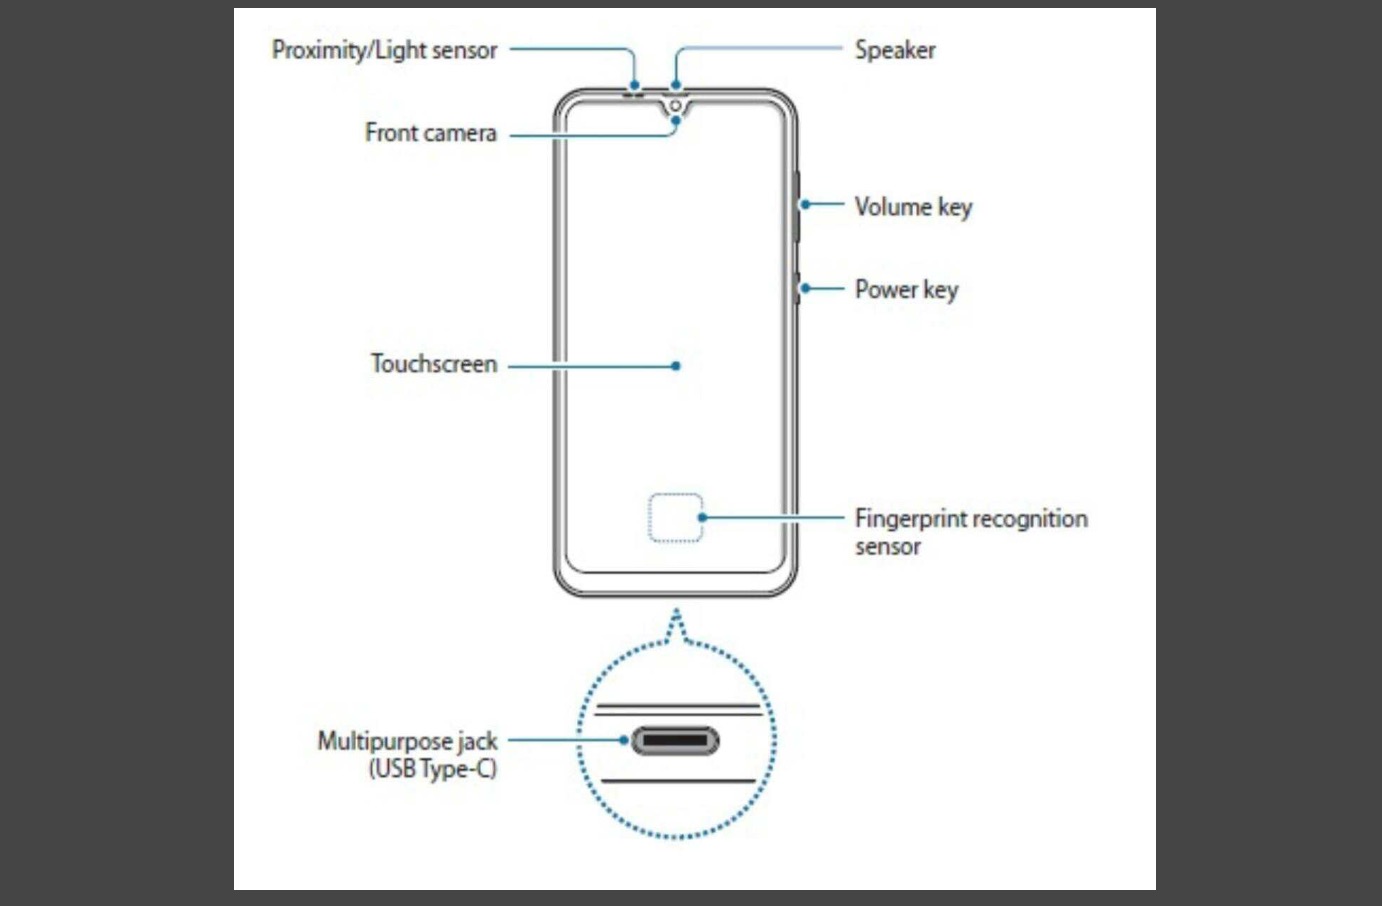 Samsung Galaxy A50 lộ
diện với màn hình Infinity-U, ba camera chính và cảm biến
vân tay trong màn hình